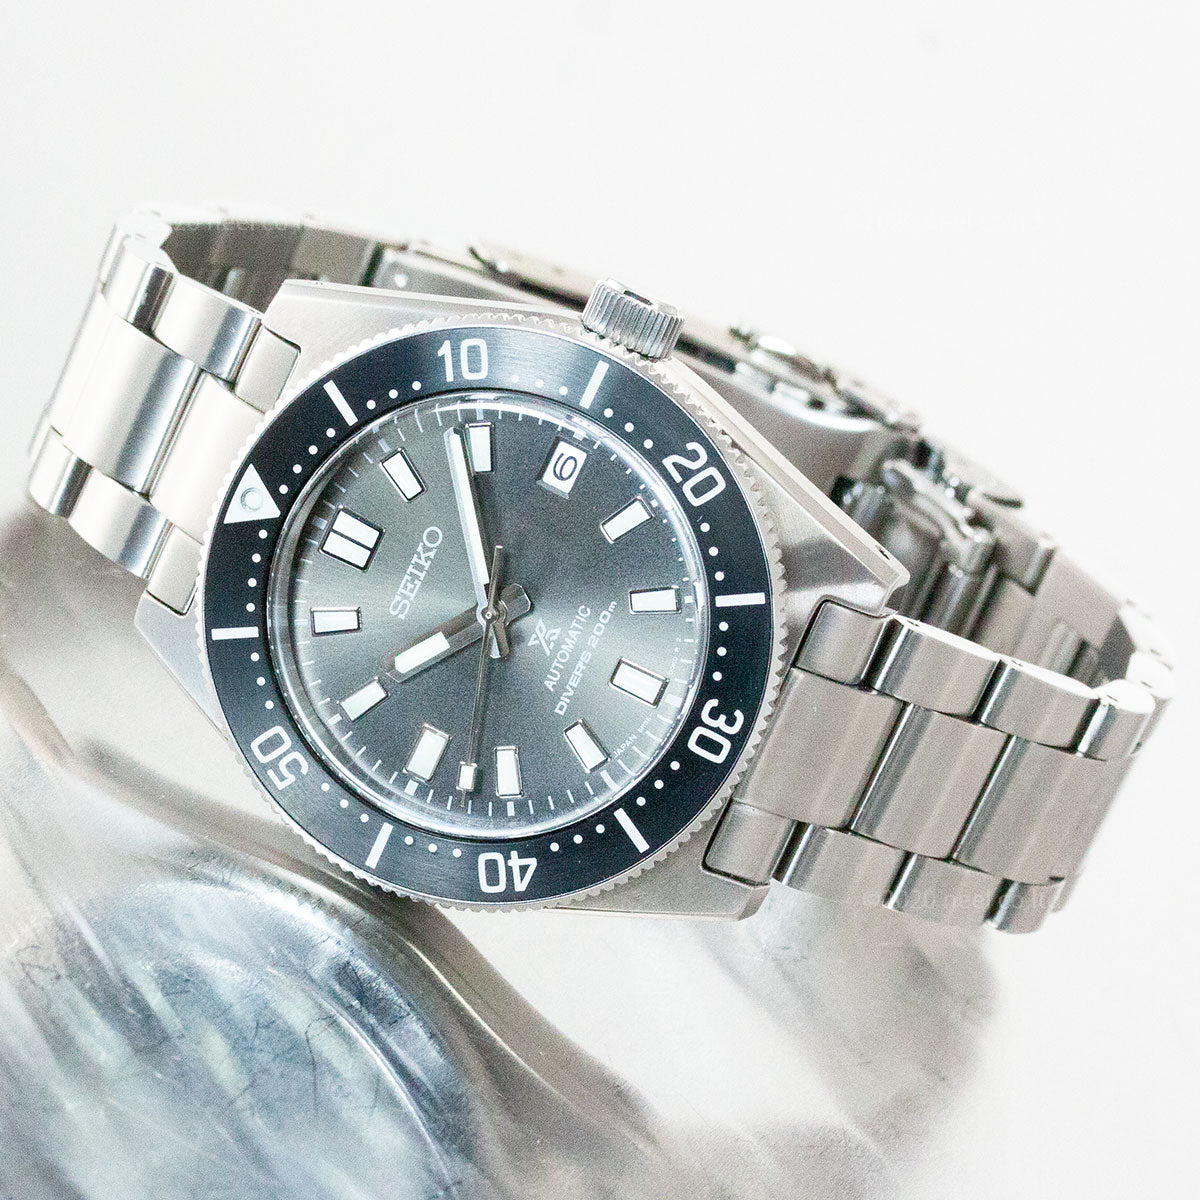 セイコー プロスペックス SEIKO PROSPEX 1stダイバーズ メカニカル 自動巻き コアショップ専用モデル 腕時計 メンズ ヒストリカルコレクション SBDC101